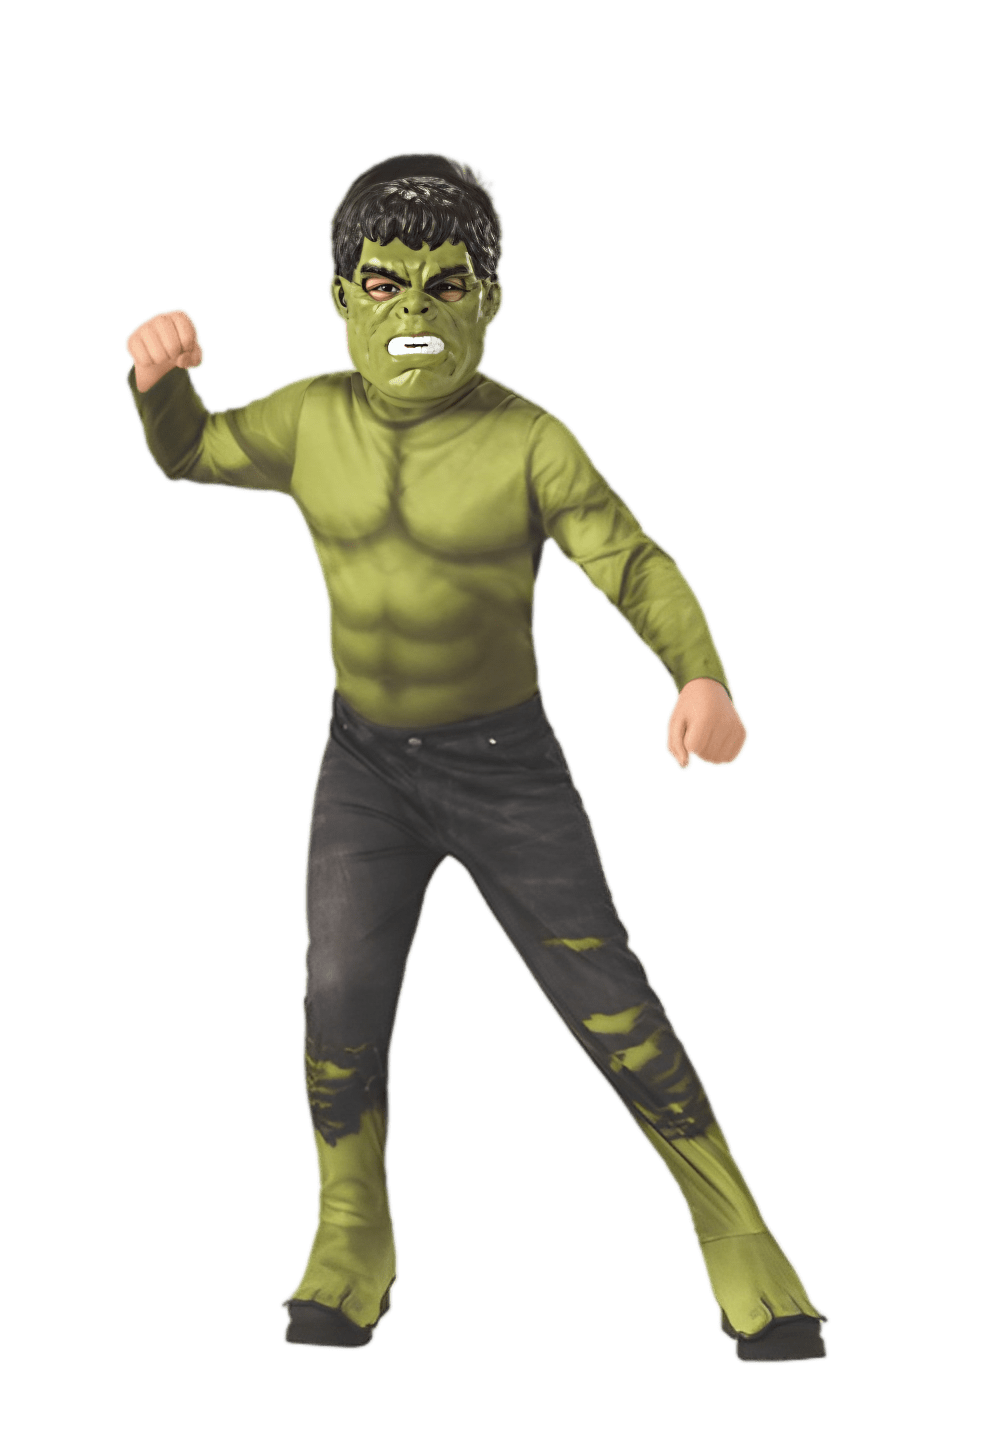 Marvel Avengers: Endgame Child's Hulk Costume & Mask